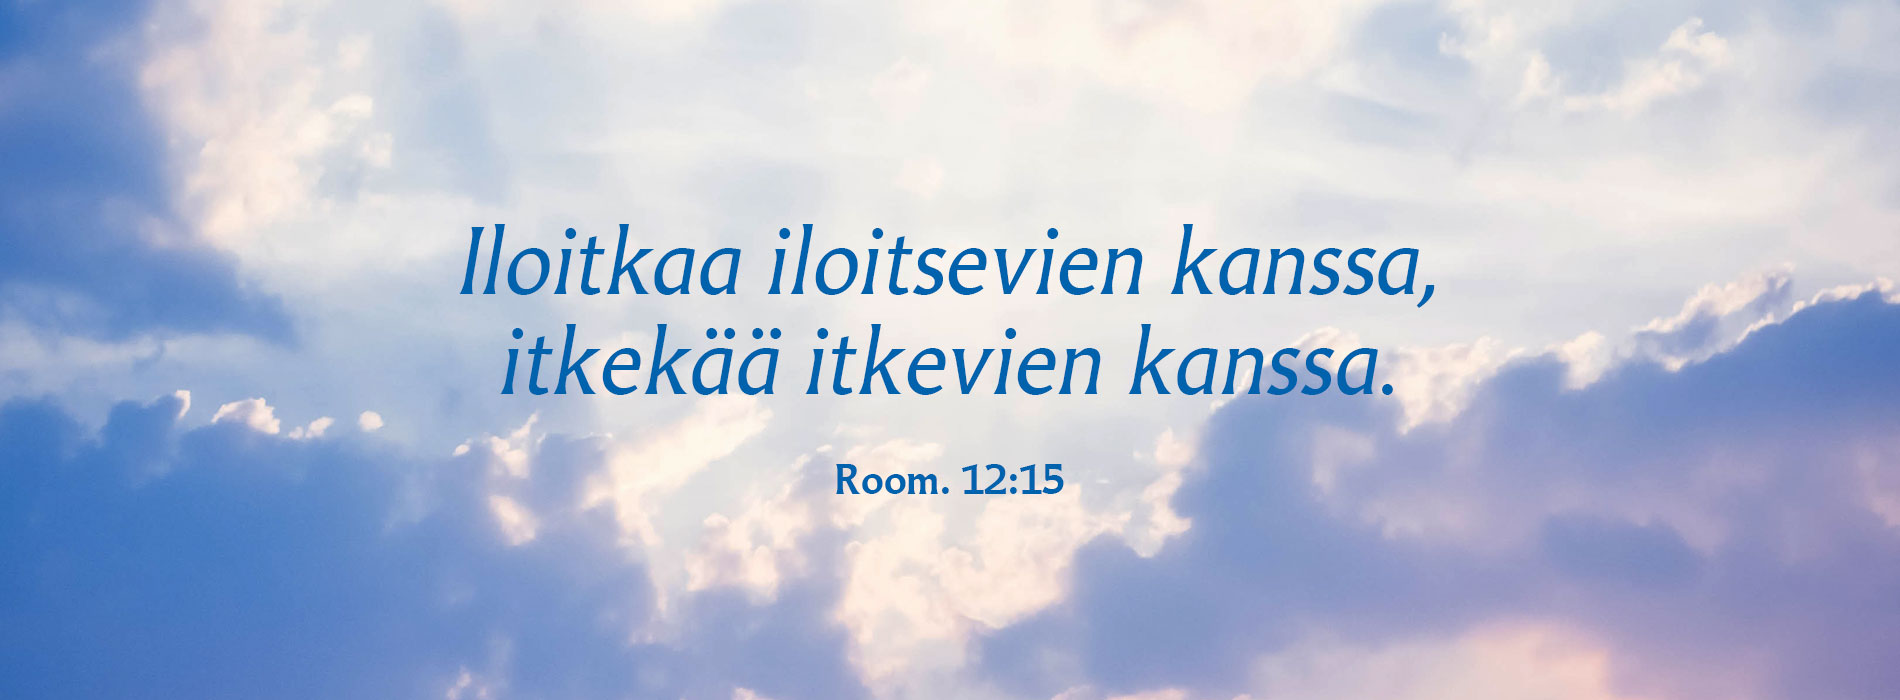 sinilila kumpupilvinen taivas ja sananpaikka: Room. 12:15 Iloitkaa iloitsevien kanssa, itkekää itkevien kanssa. 